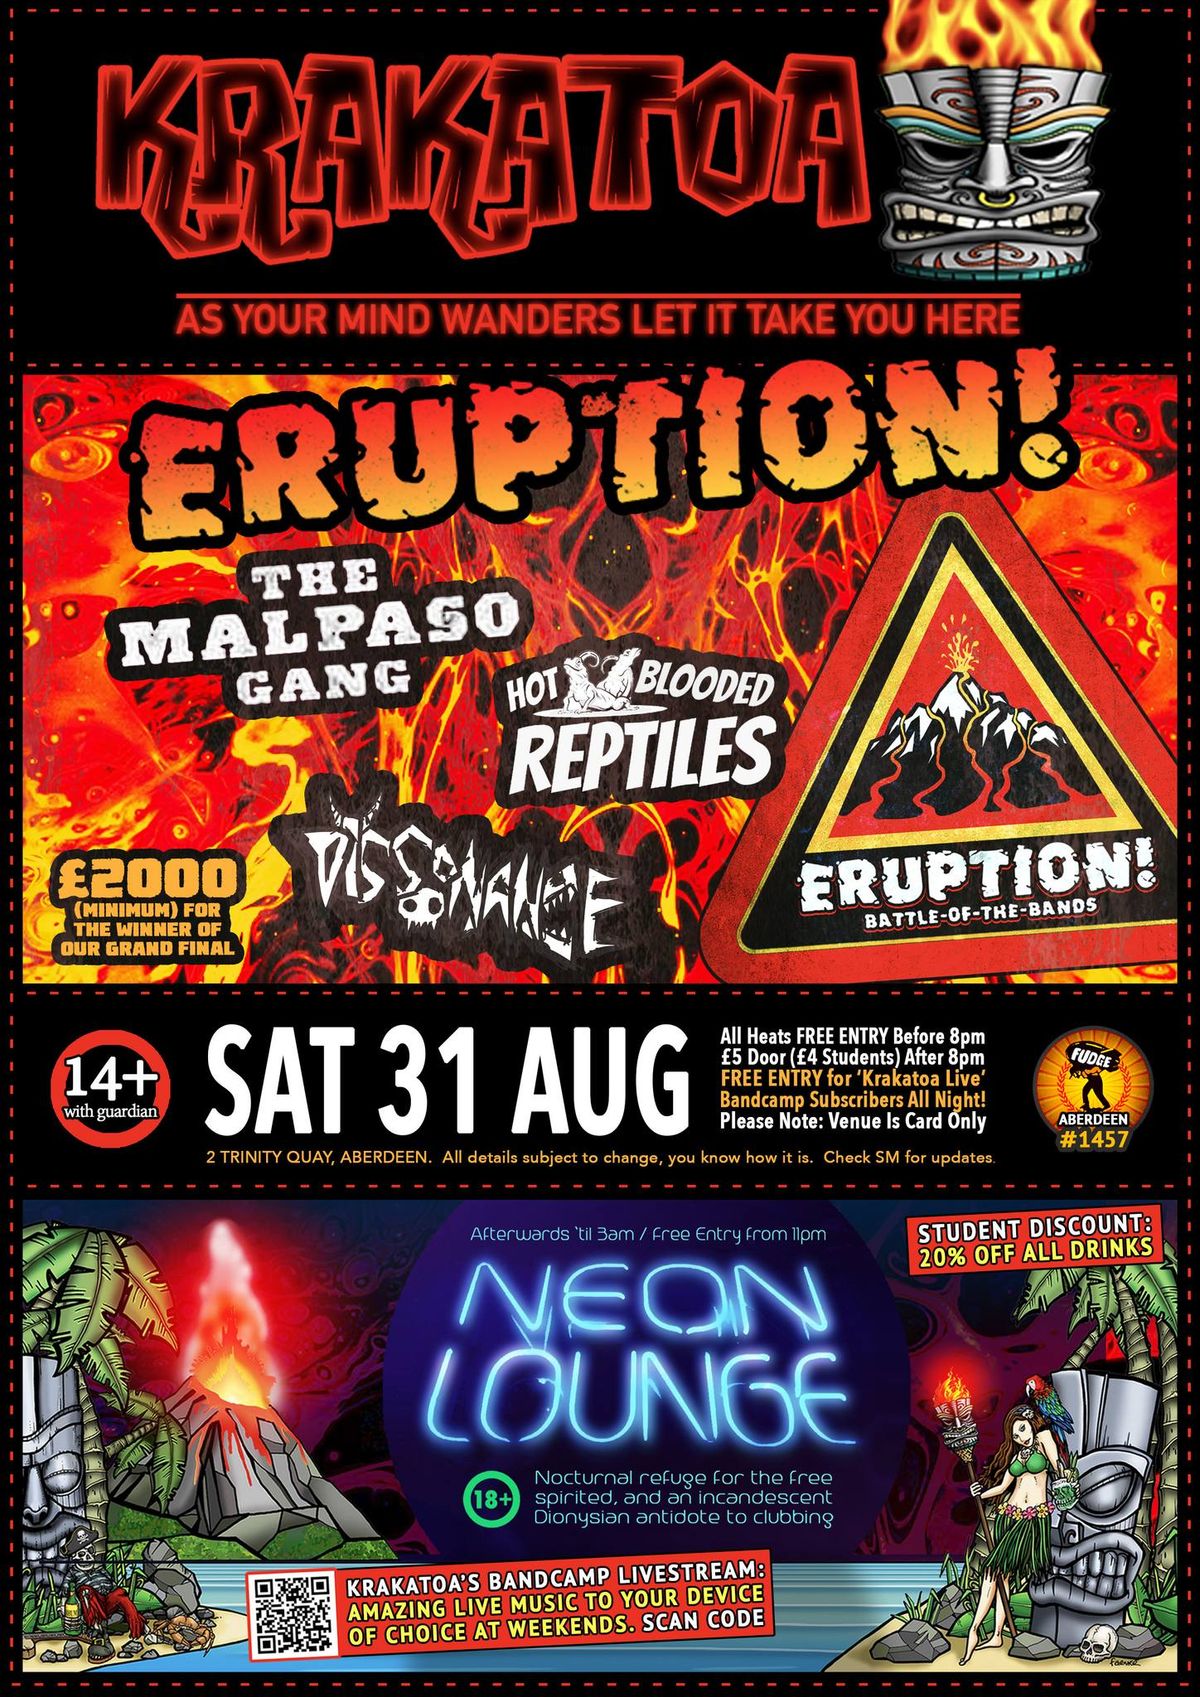 Eruption! \u00a32K BOTB - Heat - The Malpaso Gang + TBC + TBC